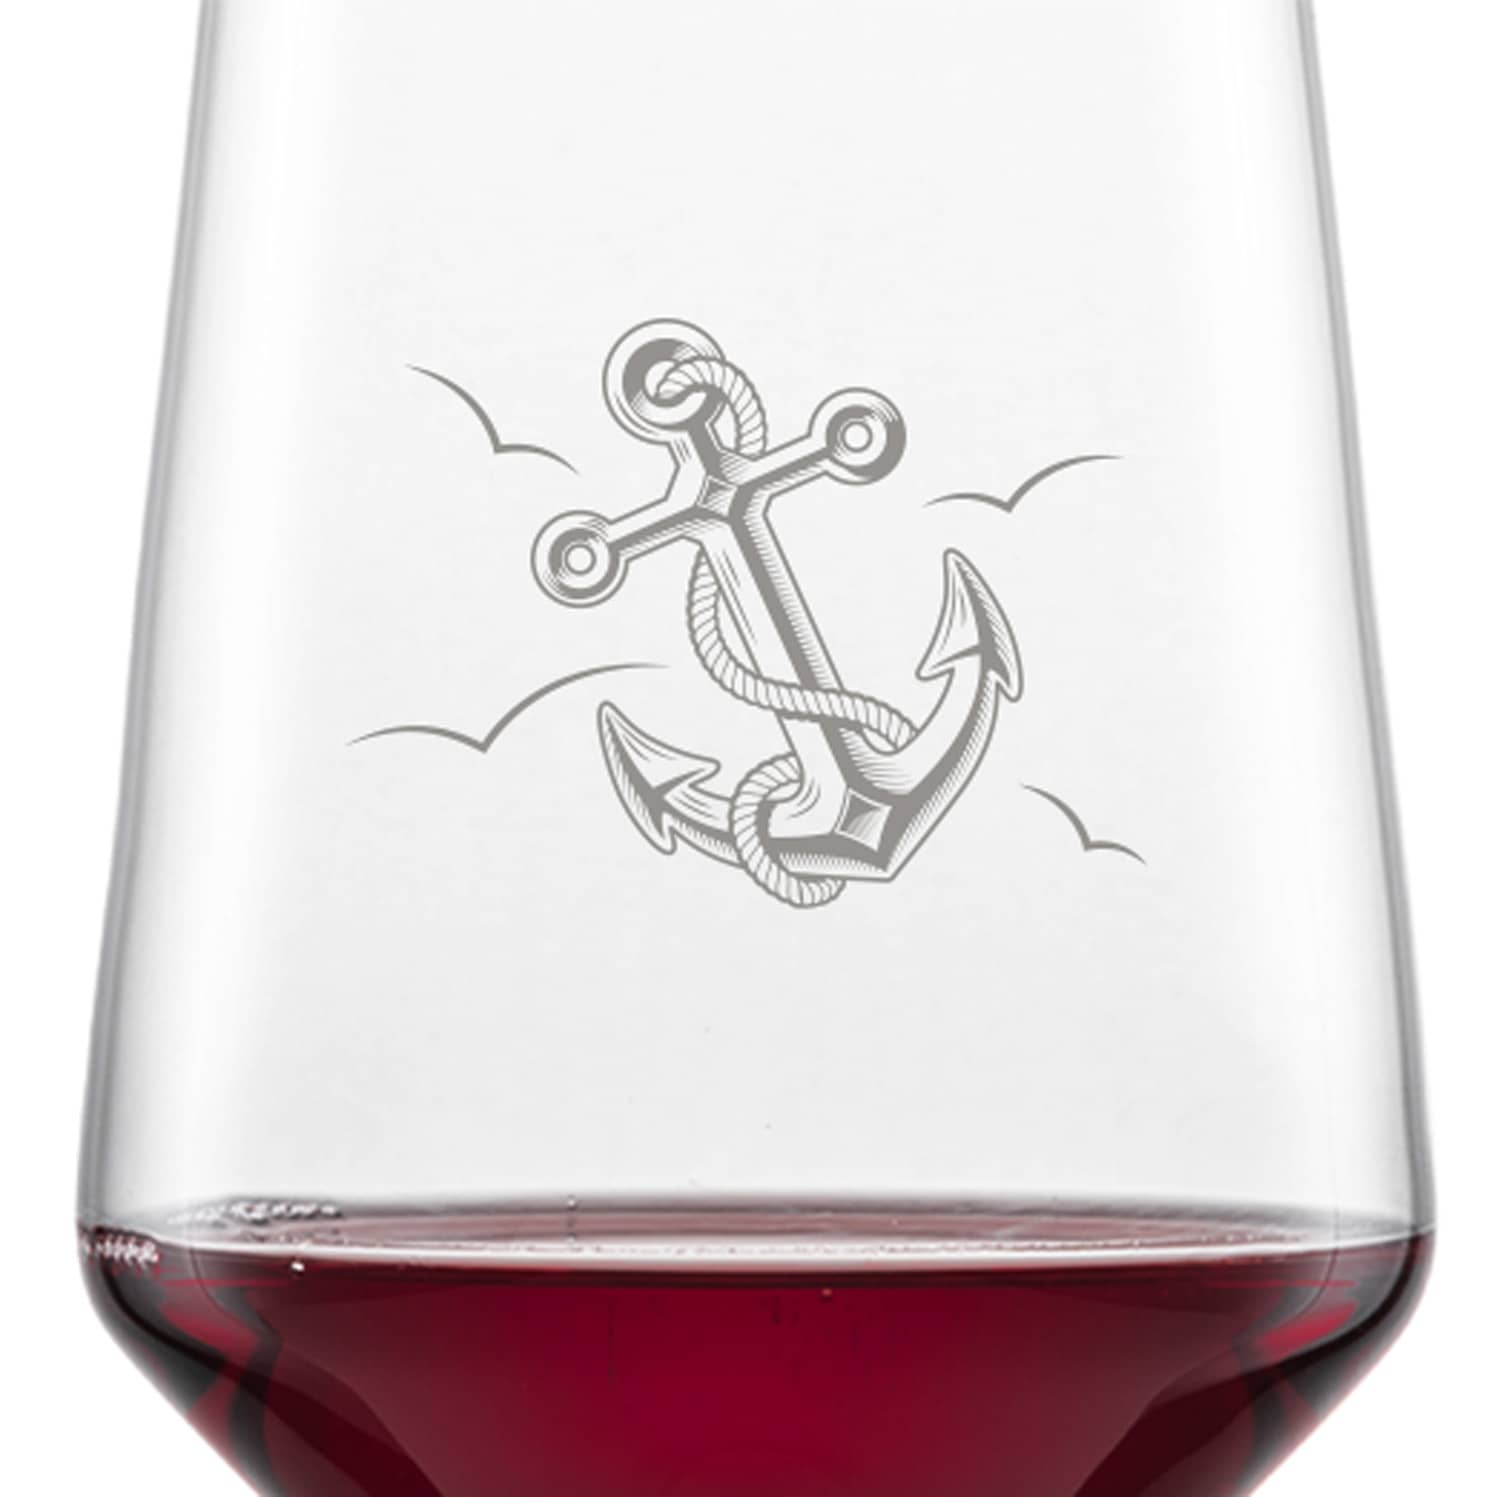 Schott Zwiesel Bordeaux Rotweinglas PURE mit Namen oder Wunschtext graviert (Anker)